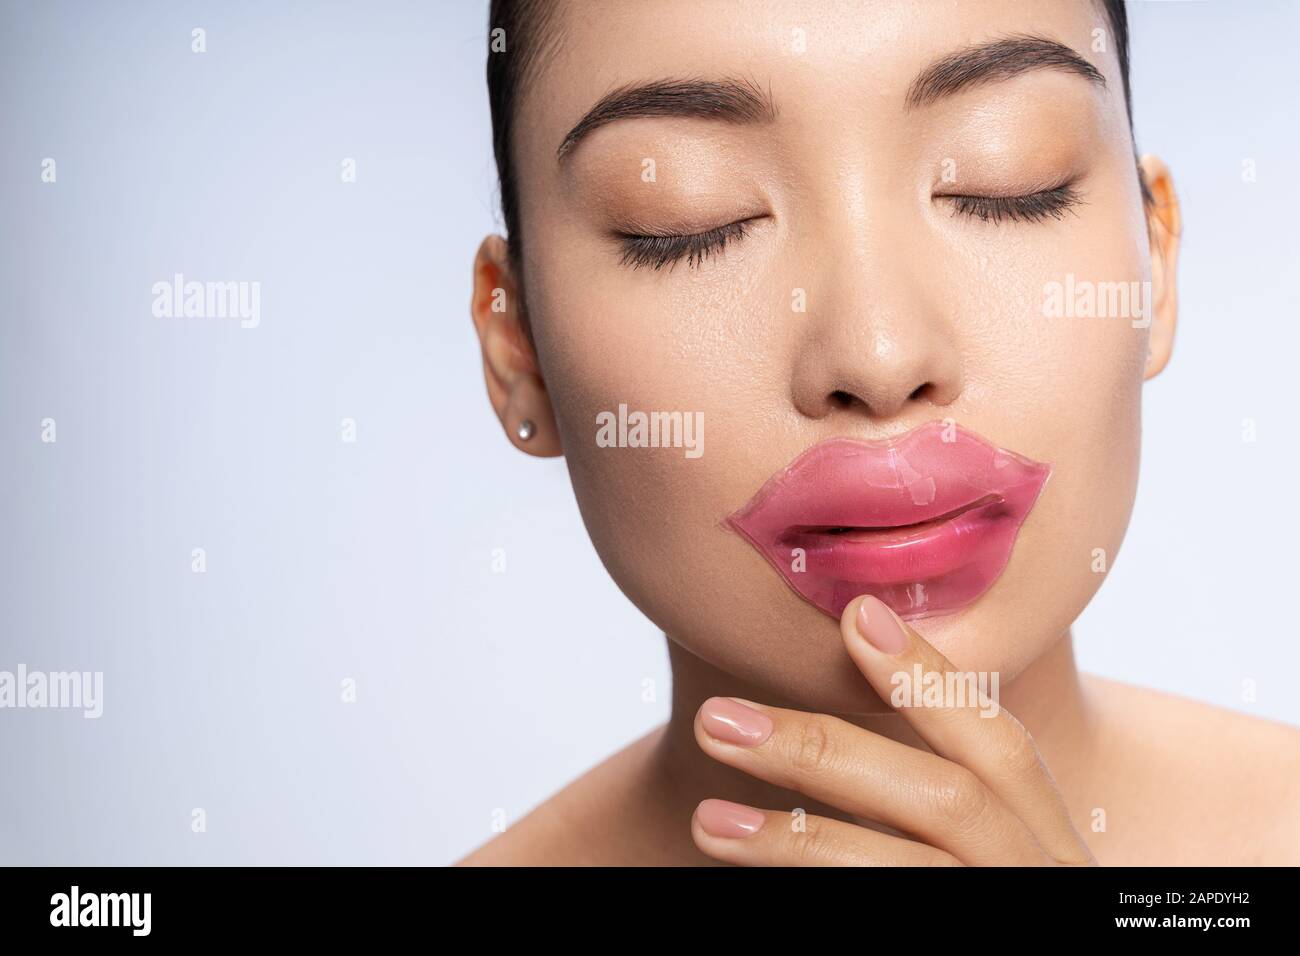 Charmante jeune dame avec des patchs sur ses lèvres posant pour l'appareil photo Banque D'Images